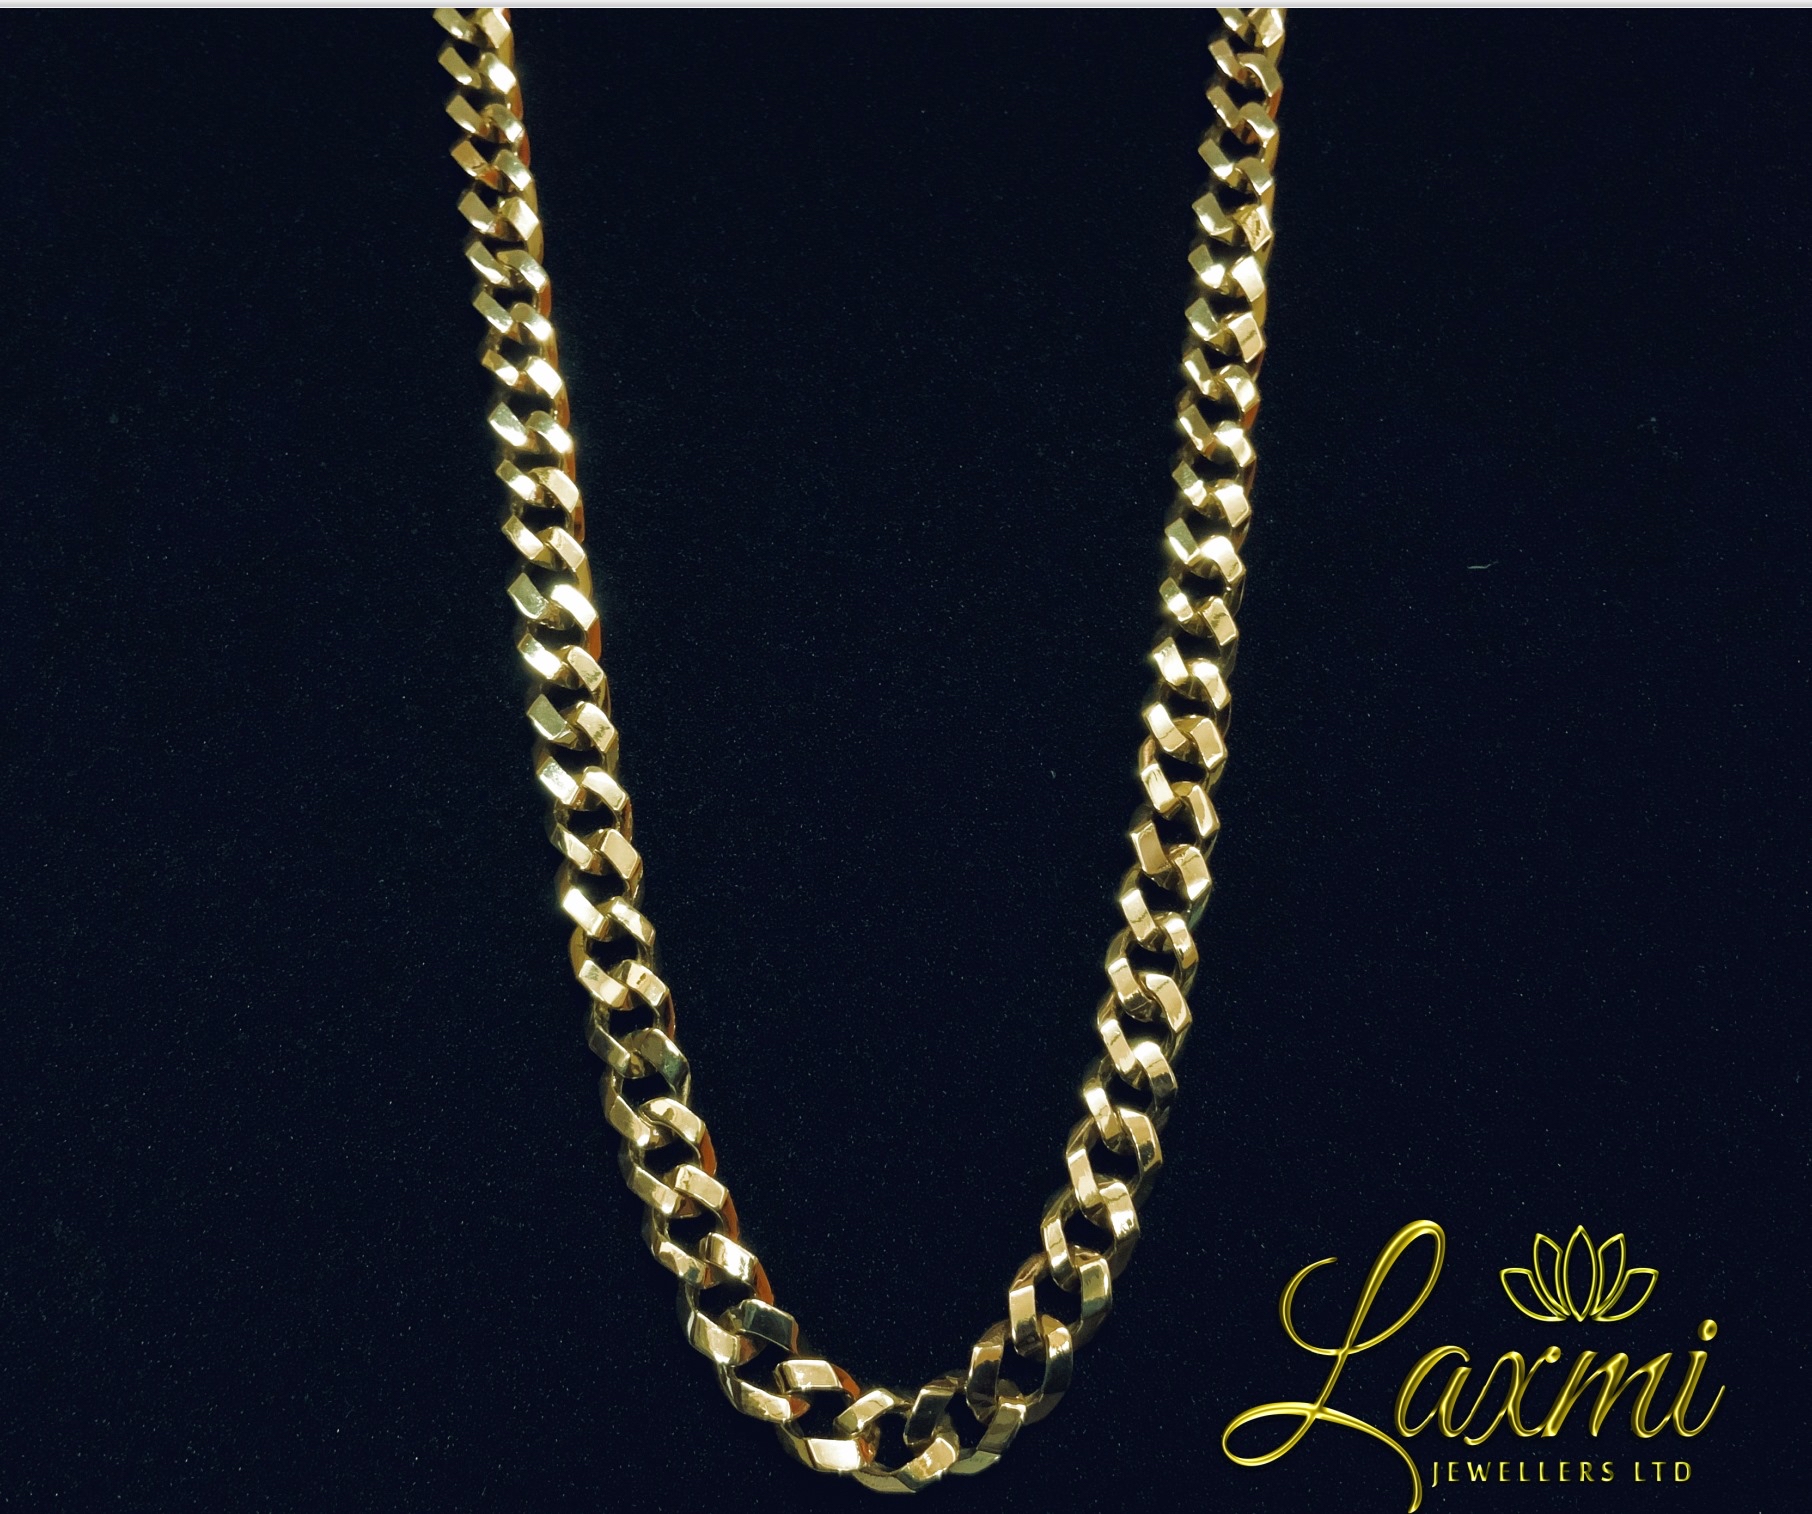 Laxmi Jewellers Ltd - JEWELLERS-RETAIL